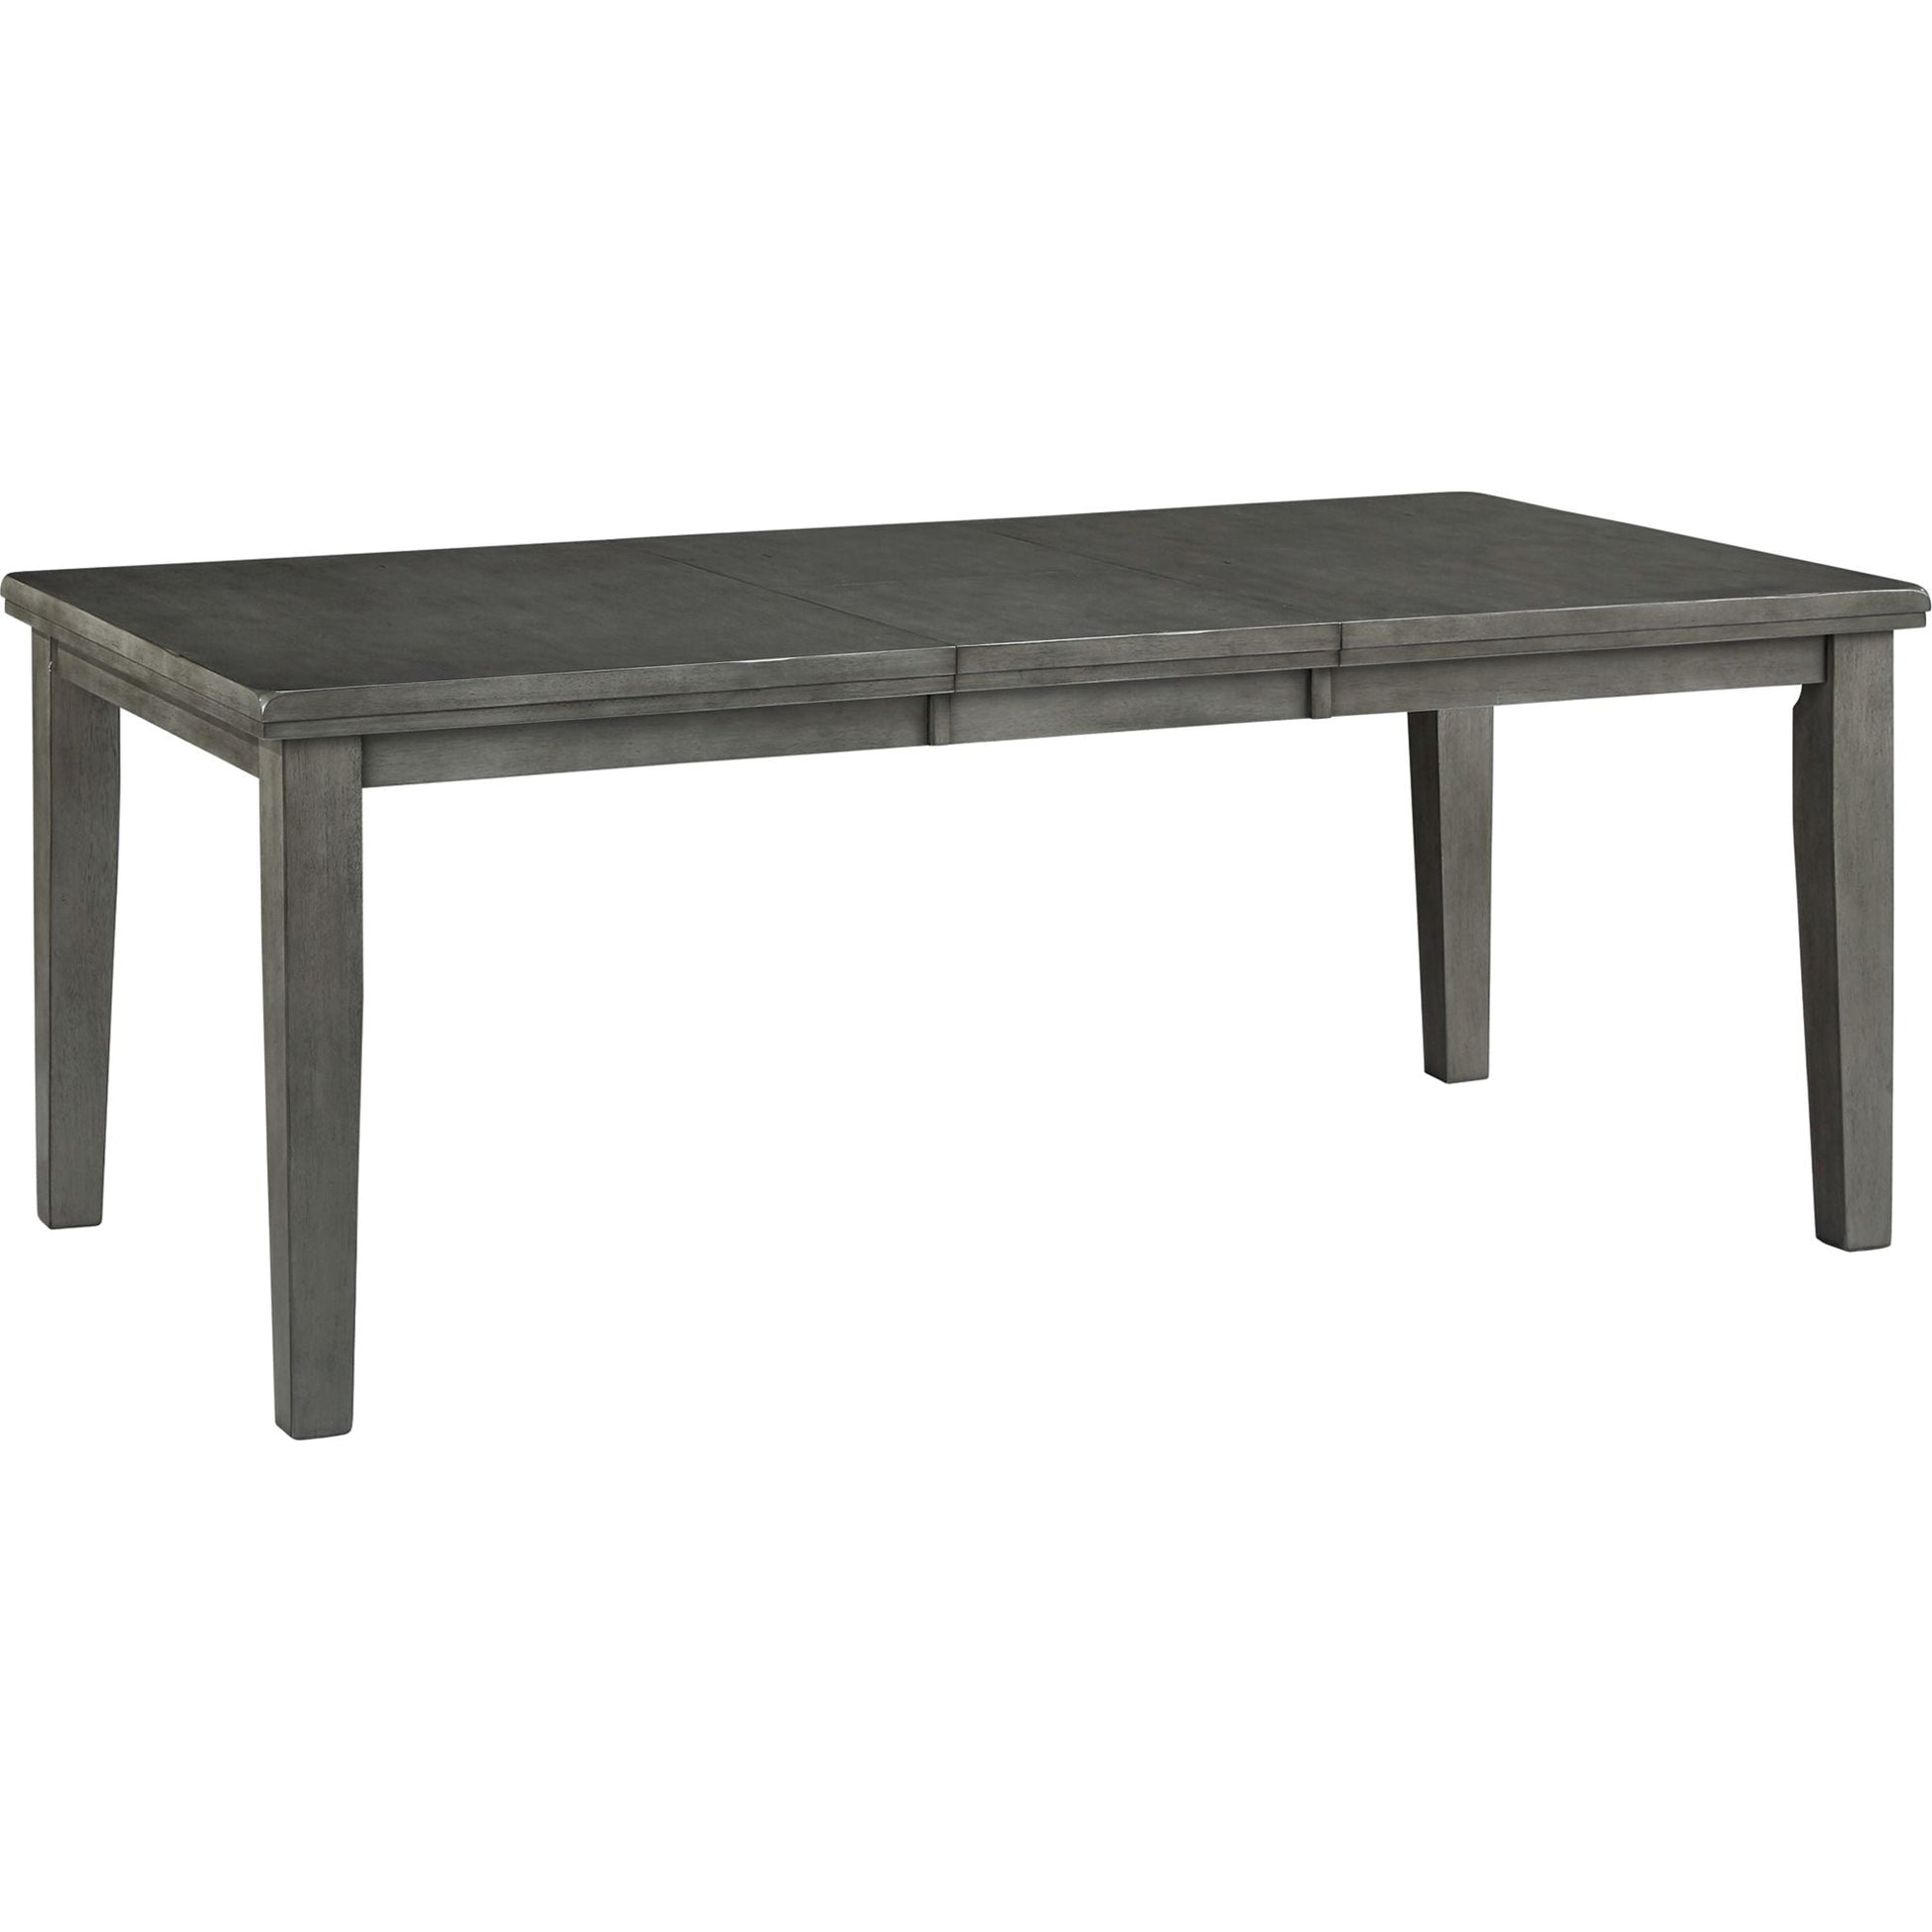 Hallanden Table - Gray - (D589-35)